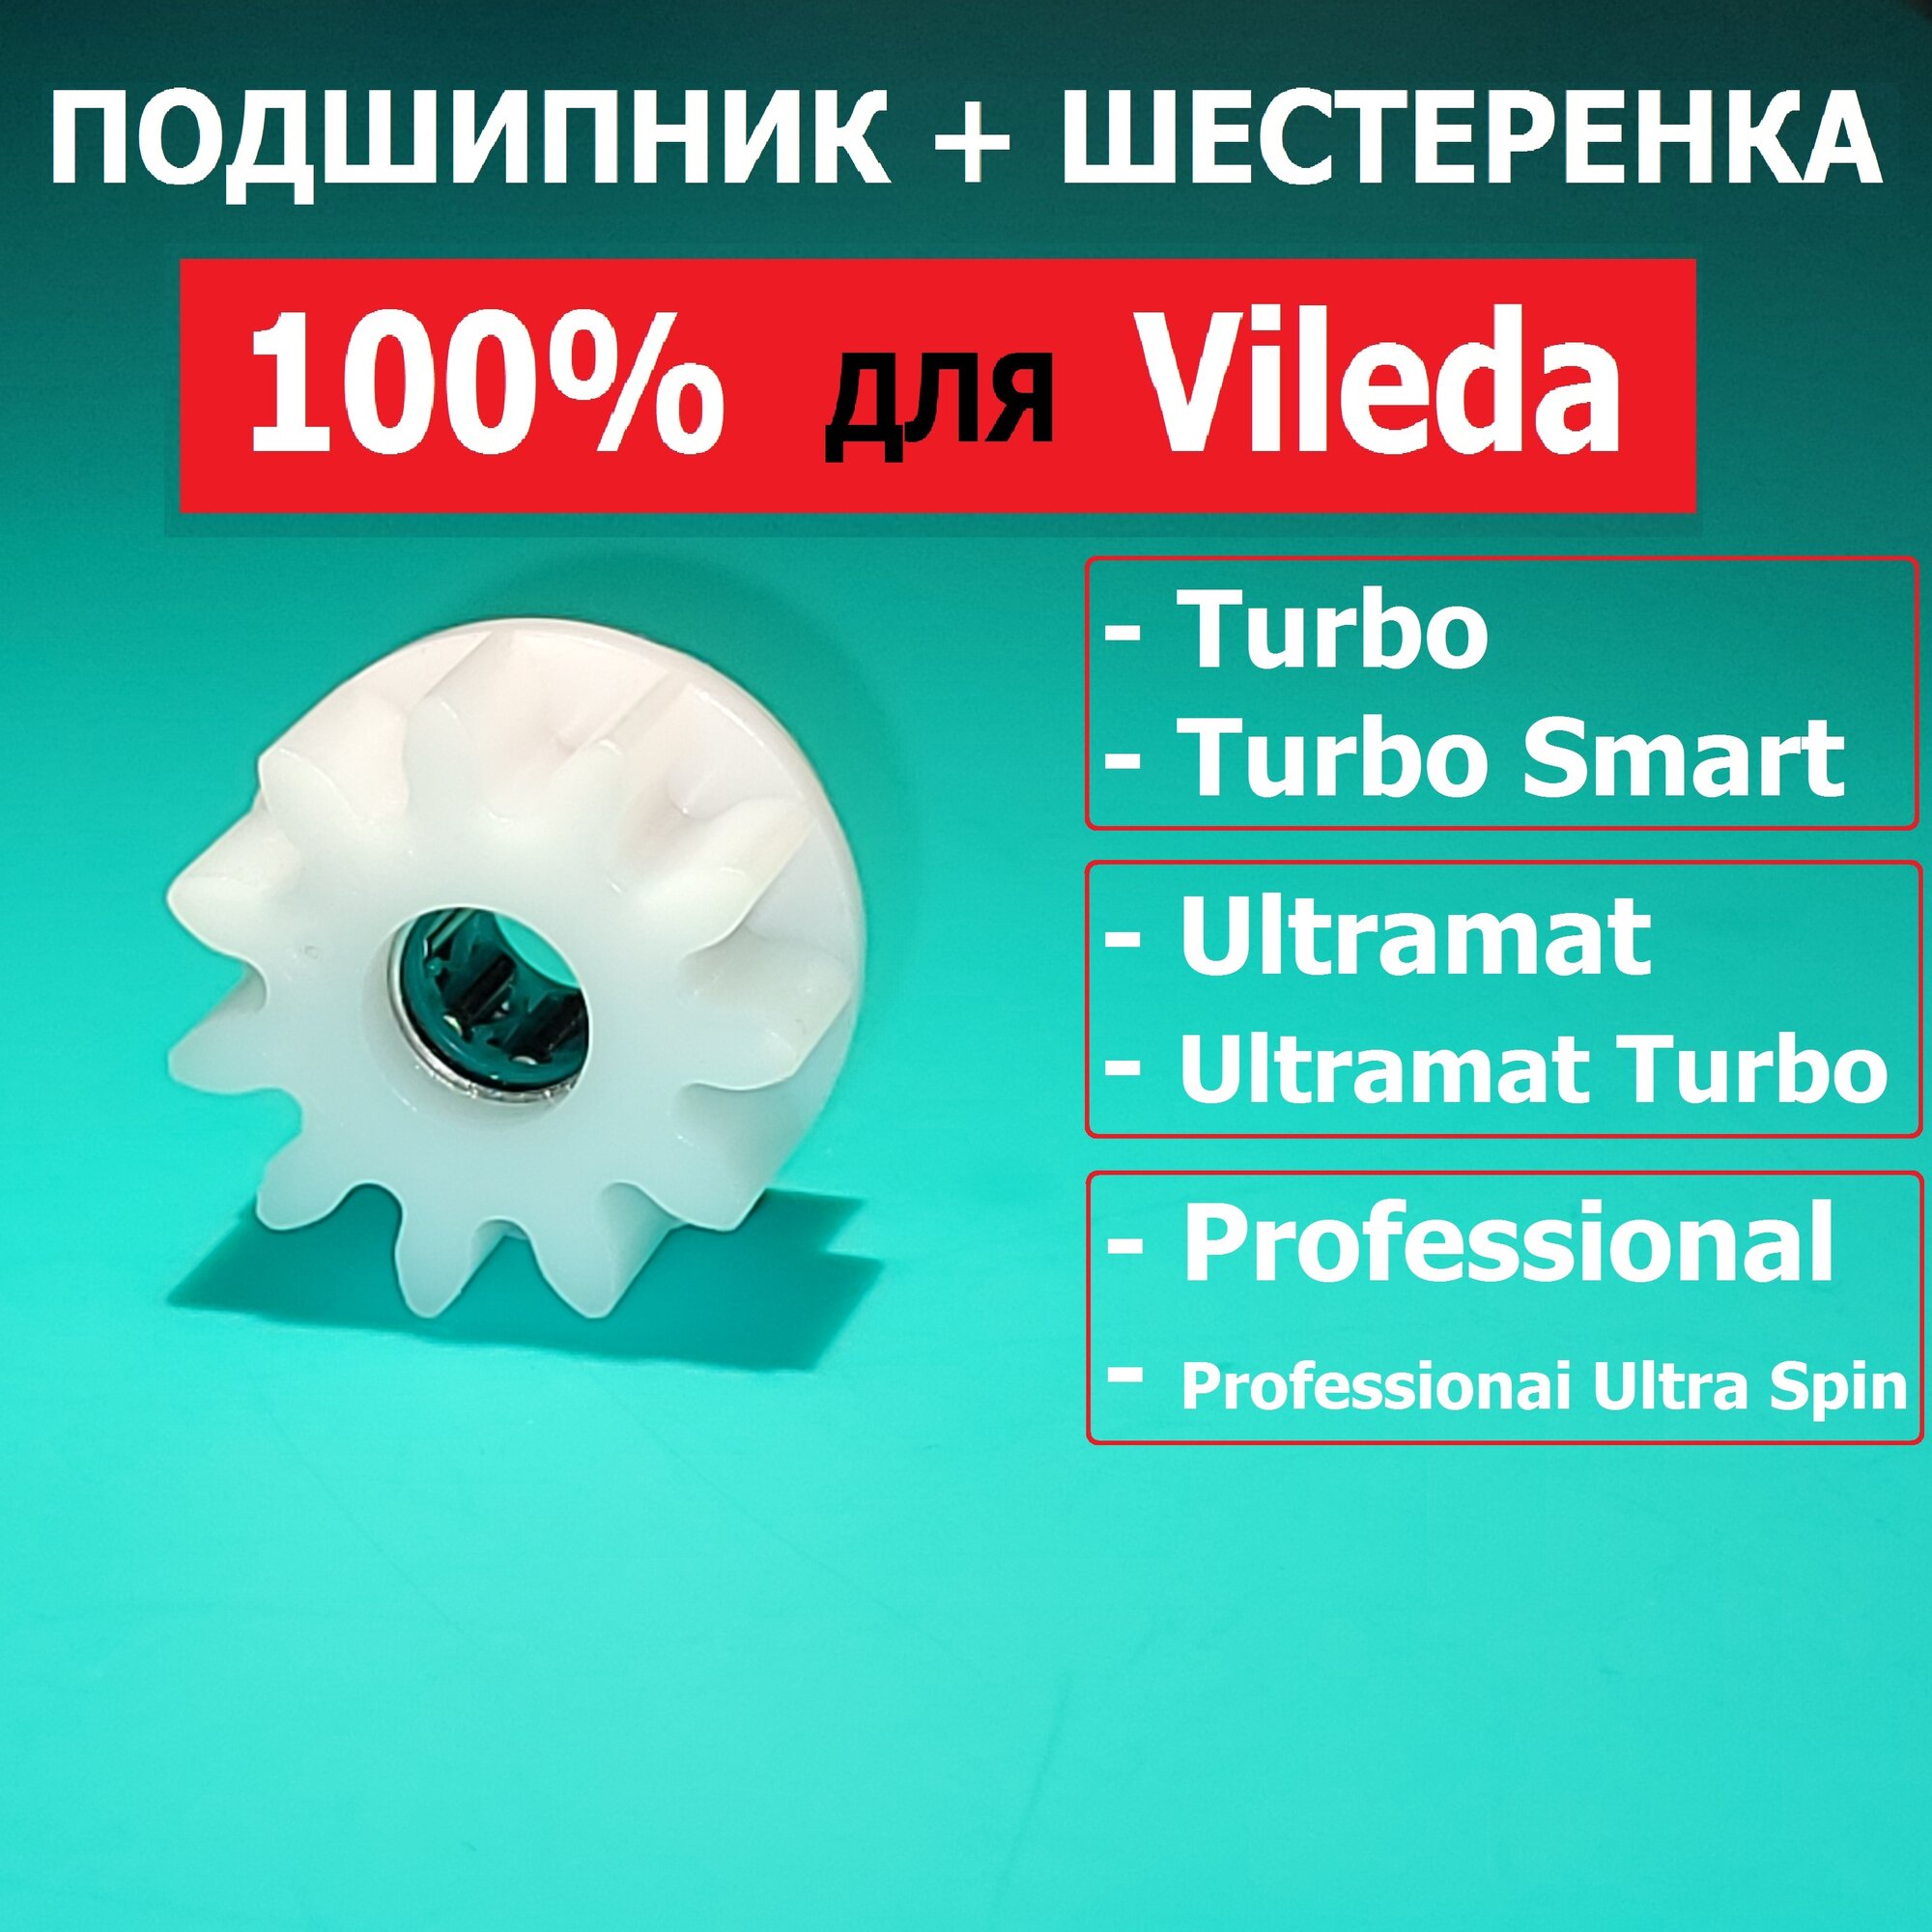 Подшипник и шестеренка для ведро с отжимом и швабра мытья пола Vileda Turbo Vileda turbo smart Professional Ultramat ремонт замена педаль.